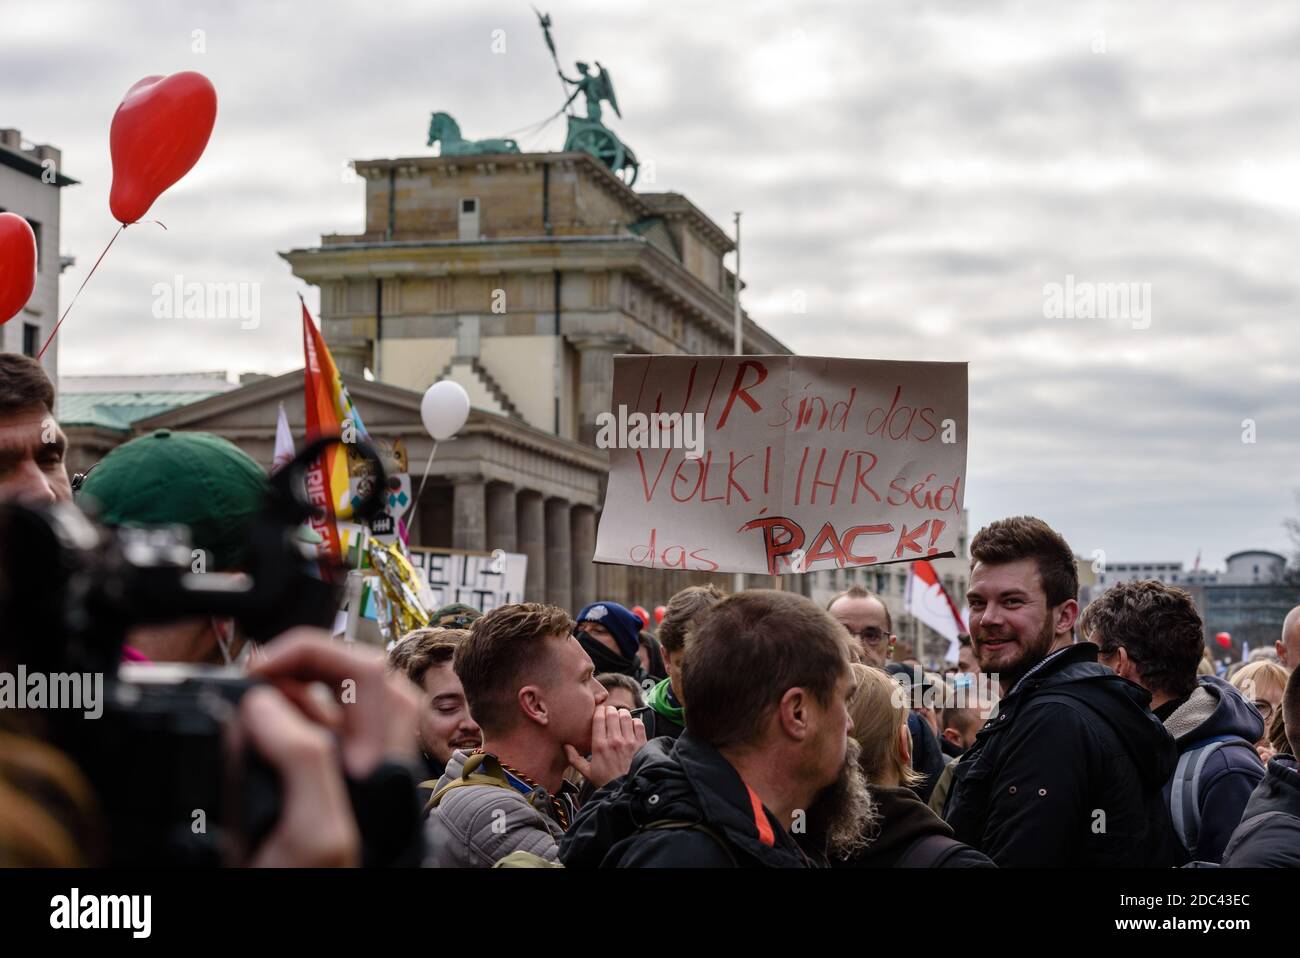 Germania, Berlino, 18 novembre 2020: I manifestanti possono essere visti accanto ad un banner che legge 'Siamo la gente, voi siete la folla' (tedesco: 'Wir sind das Volk! Ihr seid das Pack!') Nel quartiere governativo di Berlino, di fronte alla porta di Brandeburgo, dopo gruppi eterogenei intorno a Corona deniers, teorici della cospirazione e estremisti di destra hanno chiesto di bloccare l'accesso agli edifici governativi tedeschi. Sia il Bundestag che il Bundesrat hanno votato il 18 novembre 2020 sulle nuove norme previste per la legge sulla protezione delle infezioni. (Foto di Jan Scheunert/Sipa USA) Foto Stock